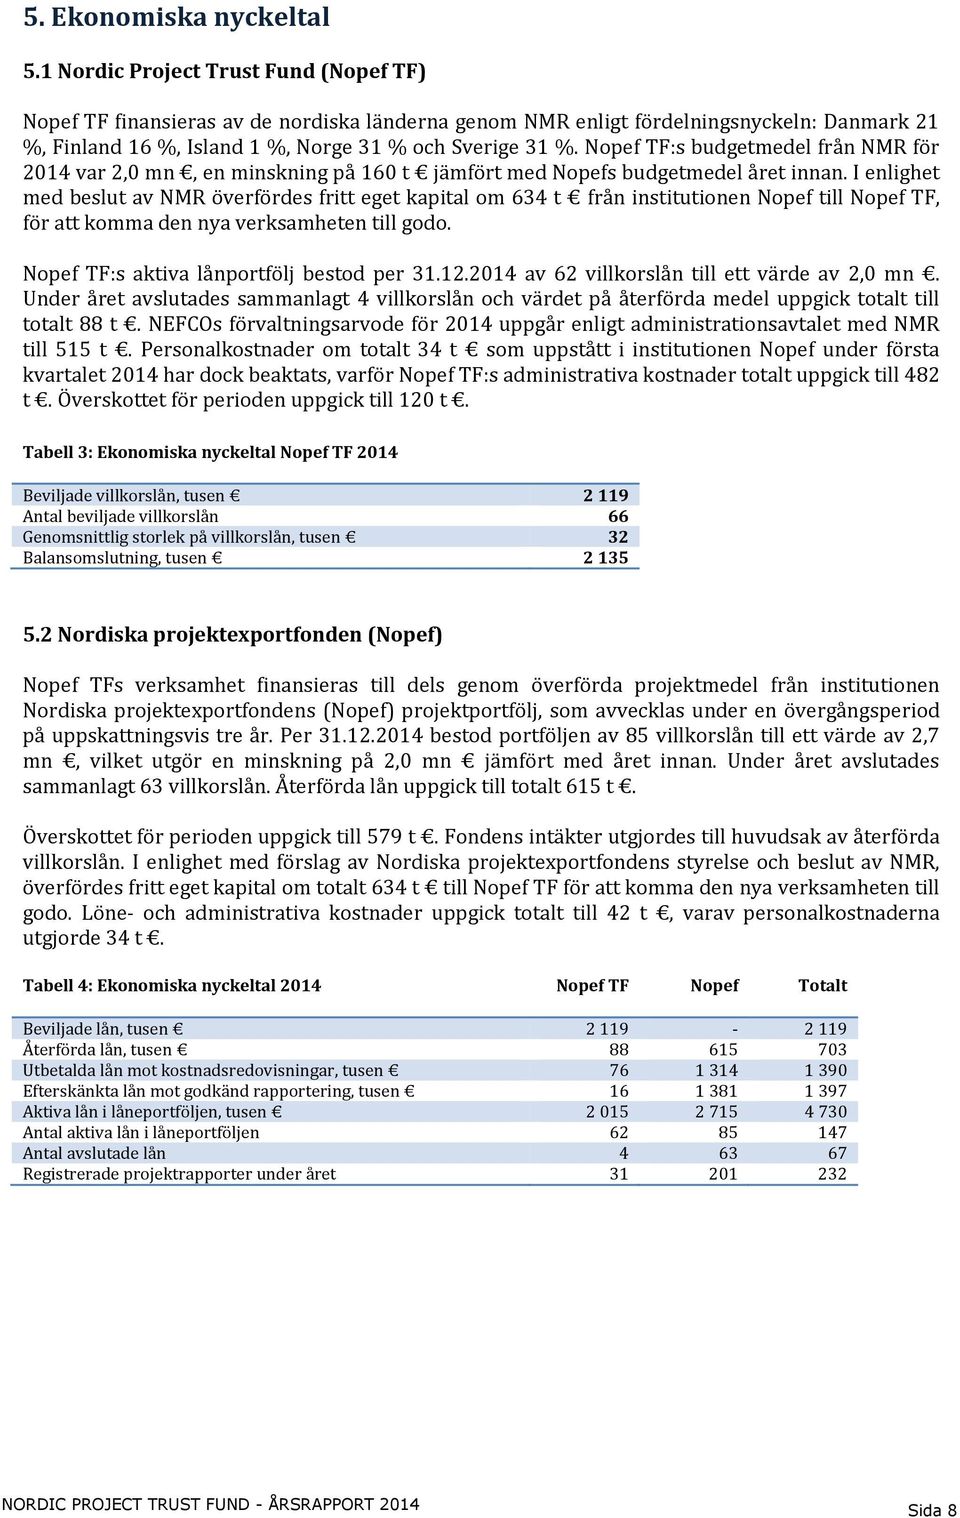 Nopef TF:s budgetmedel från NMR för 2014 var 2,0 mn, en minskning på 160 t jämfört med Nopefs budgetmedel året innan.